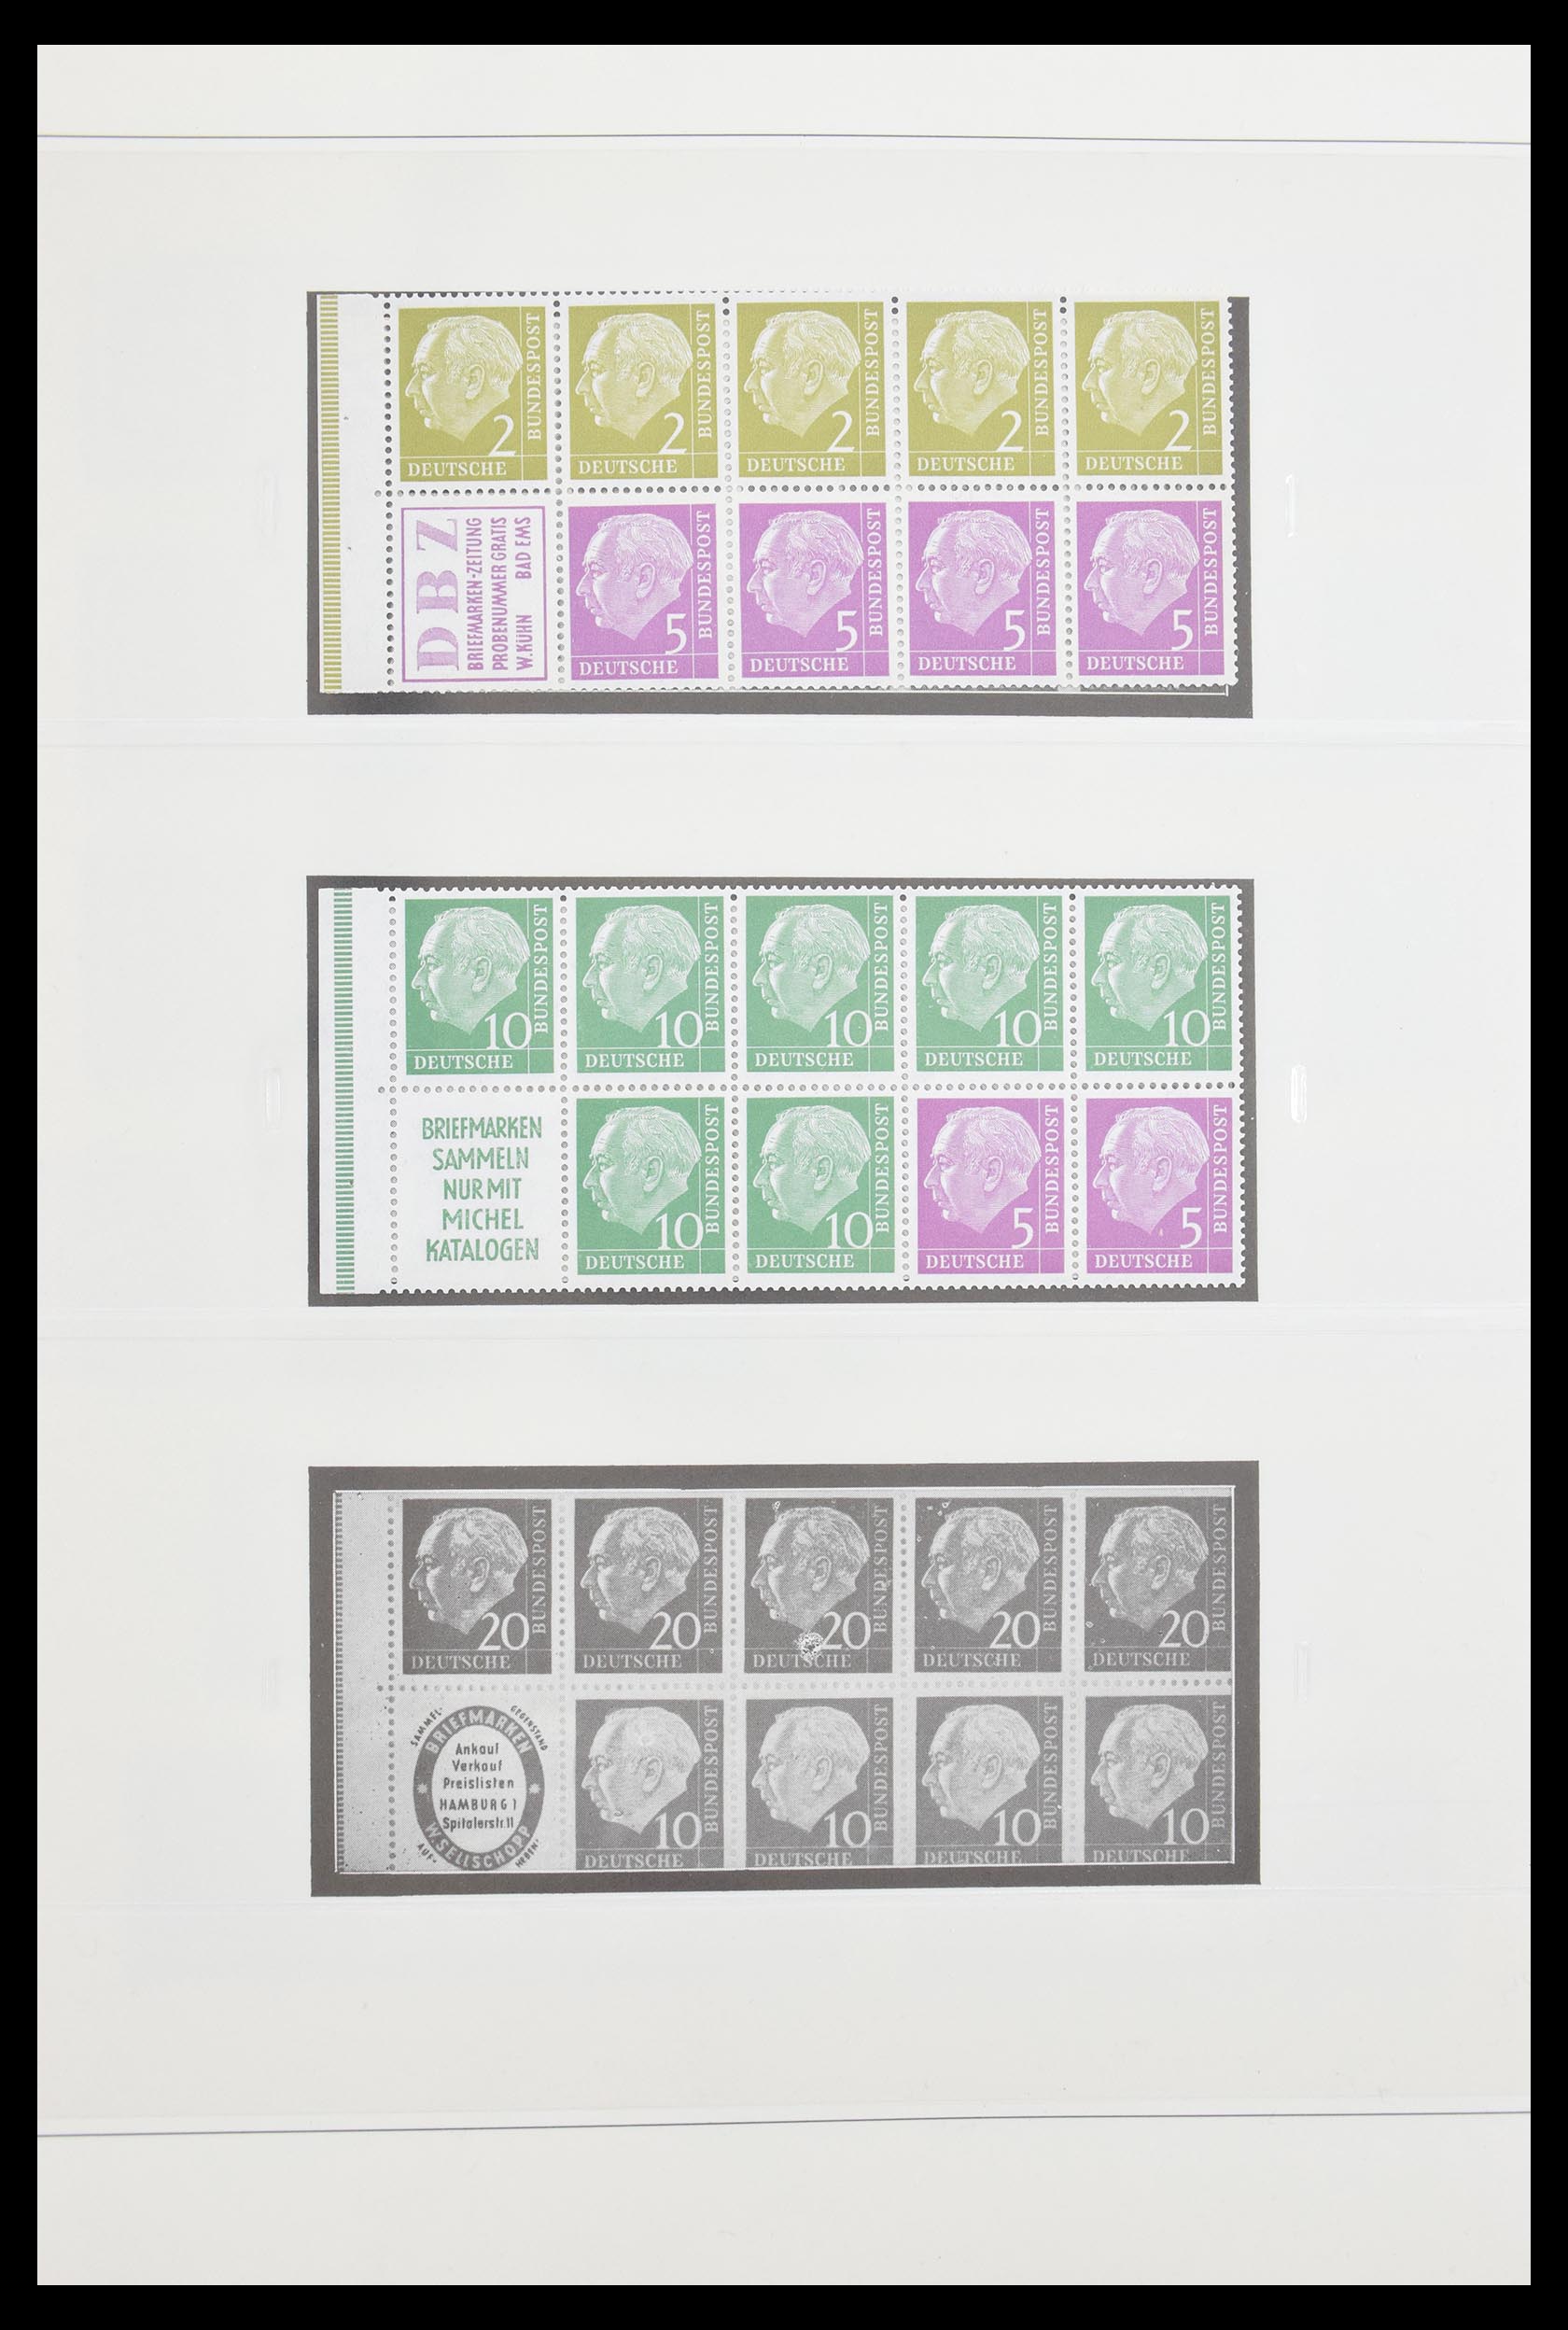 30605 006 - 30605 Bundespost combinaties 1951-1974.